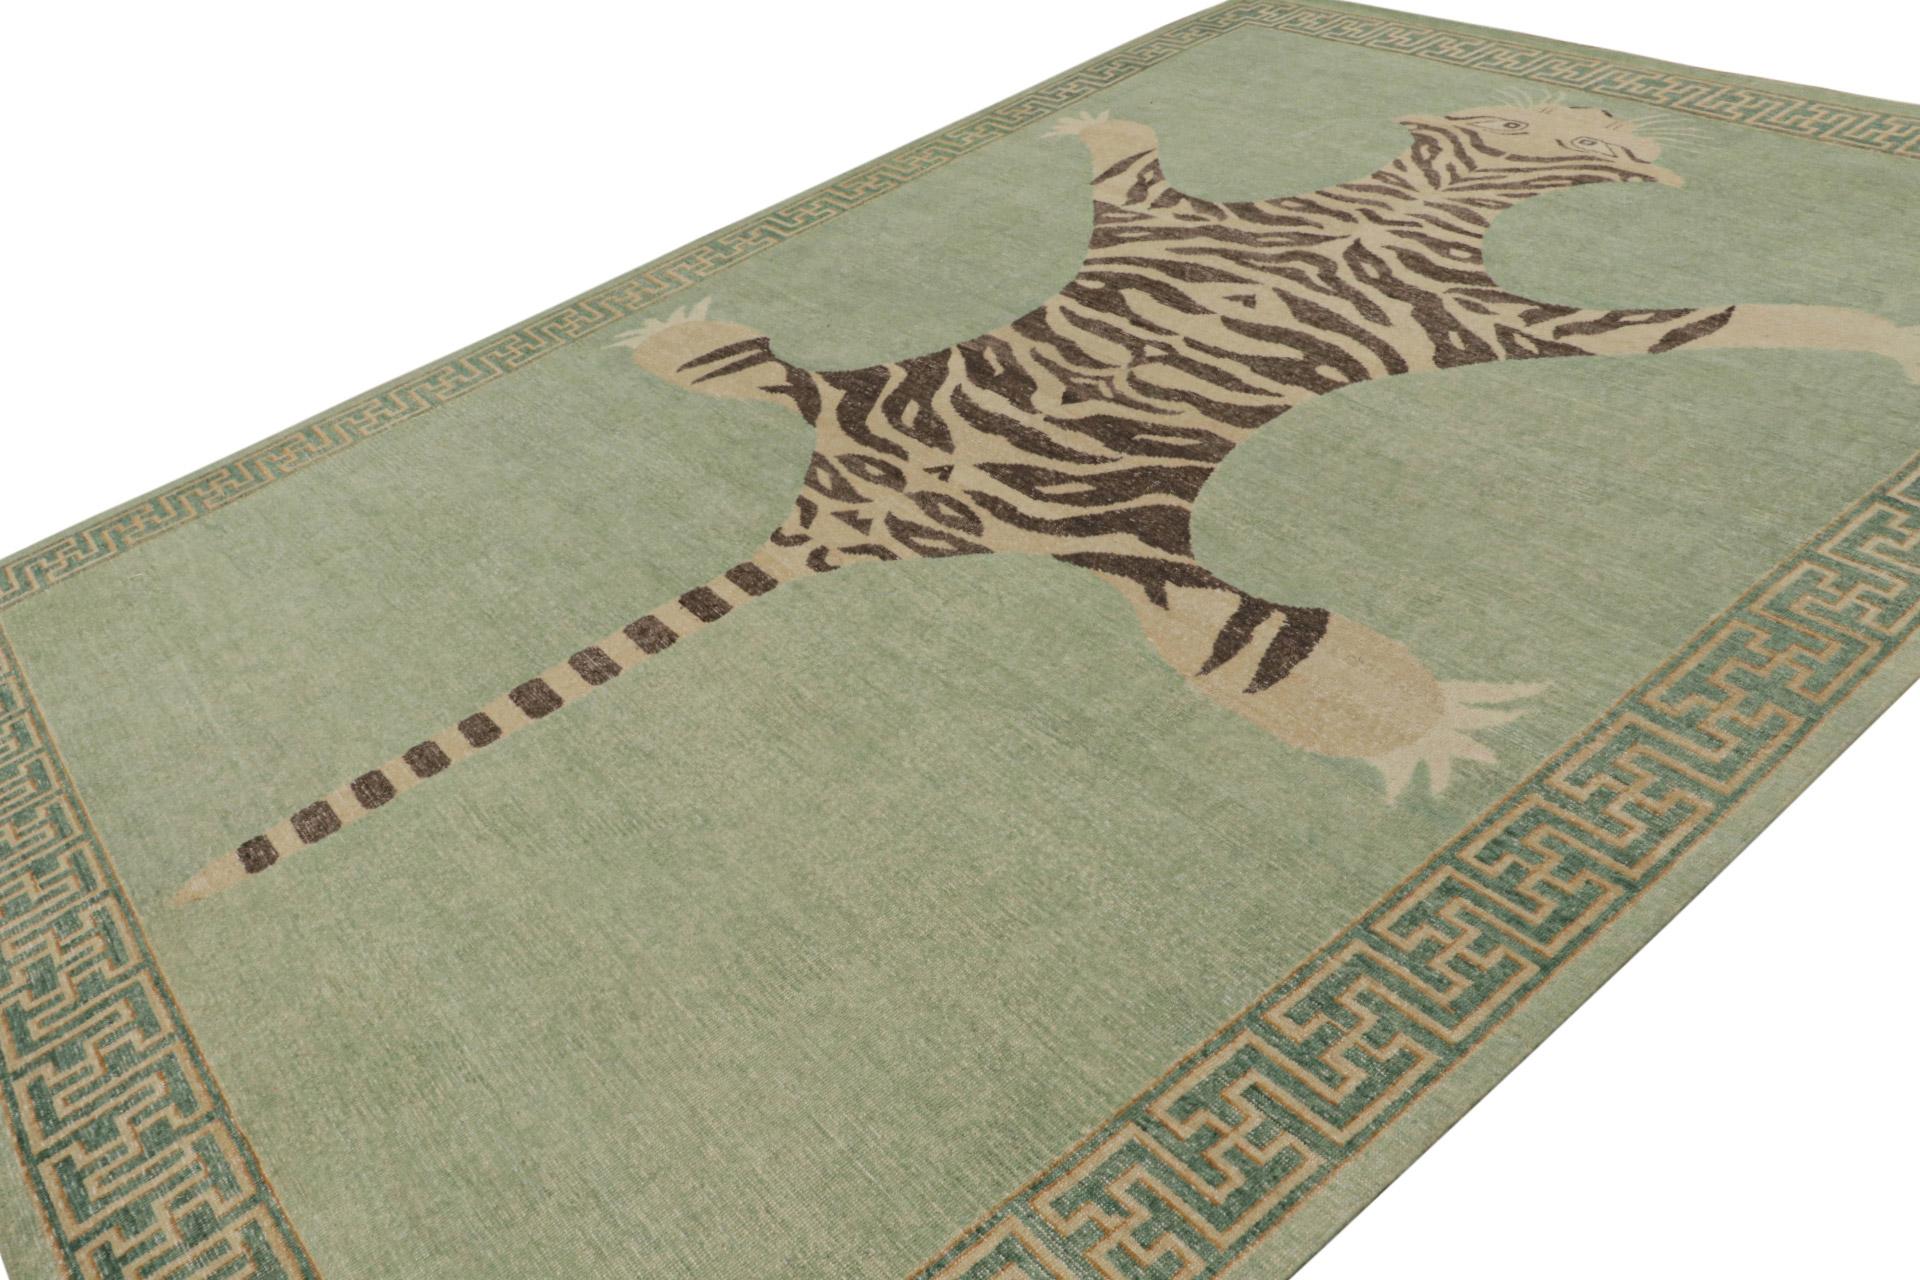 Noué à la main en laine, ce tapis moderne 10x14 de notre ligne de tapis Tiger dans la collection Homage, célèbre l'un des styles de tapis animaliers picturaux les plus rares et les plus précieux de l'histoire. 

Sur le Design : 

Cette pièce